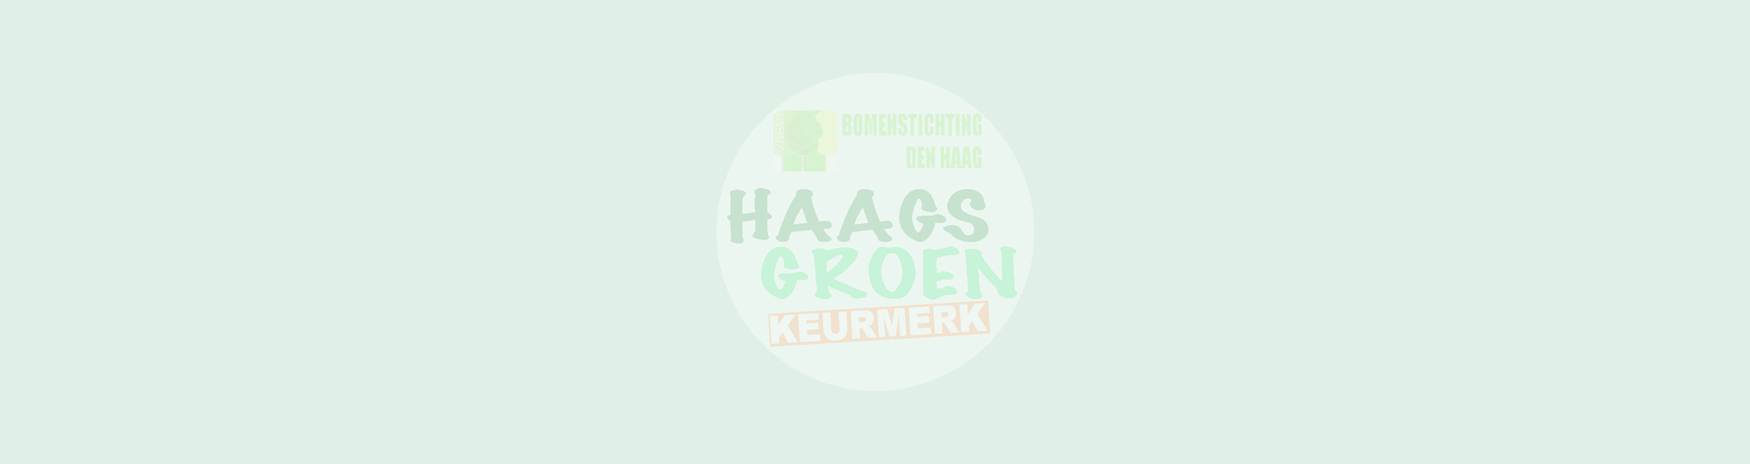 Haags Groen Keurmerk –  een tussenbalans tbv. nieuw college